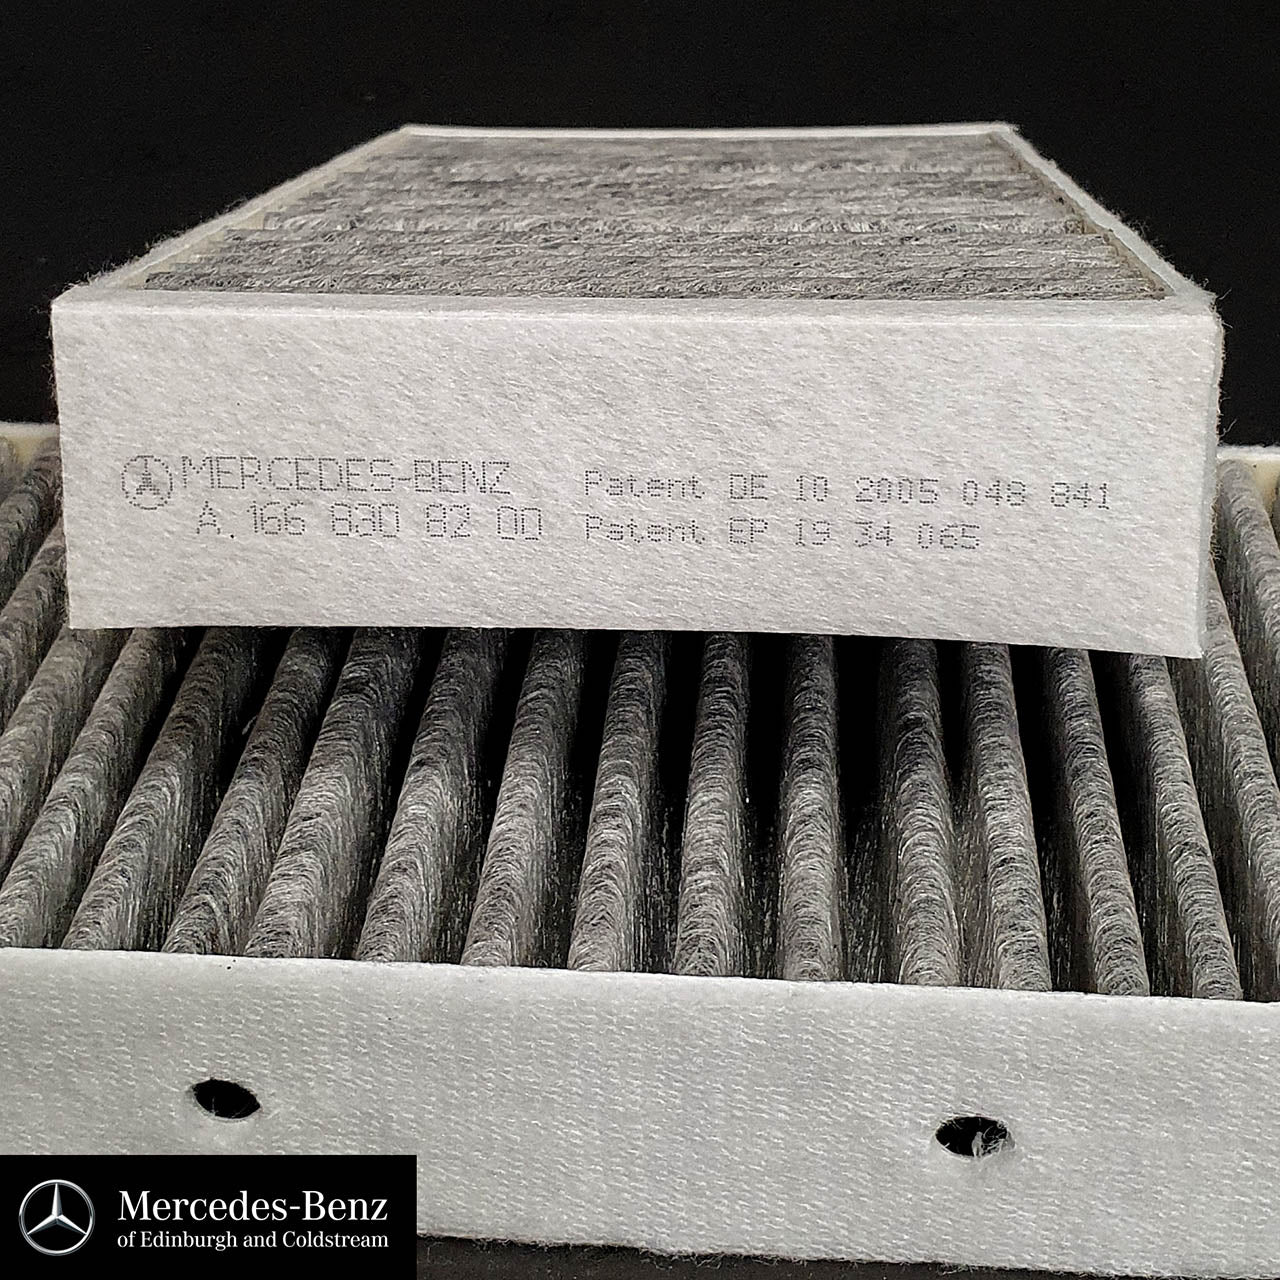 Genuine Mercedes-Benz Pollen Dust Filter